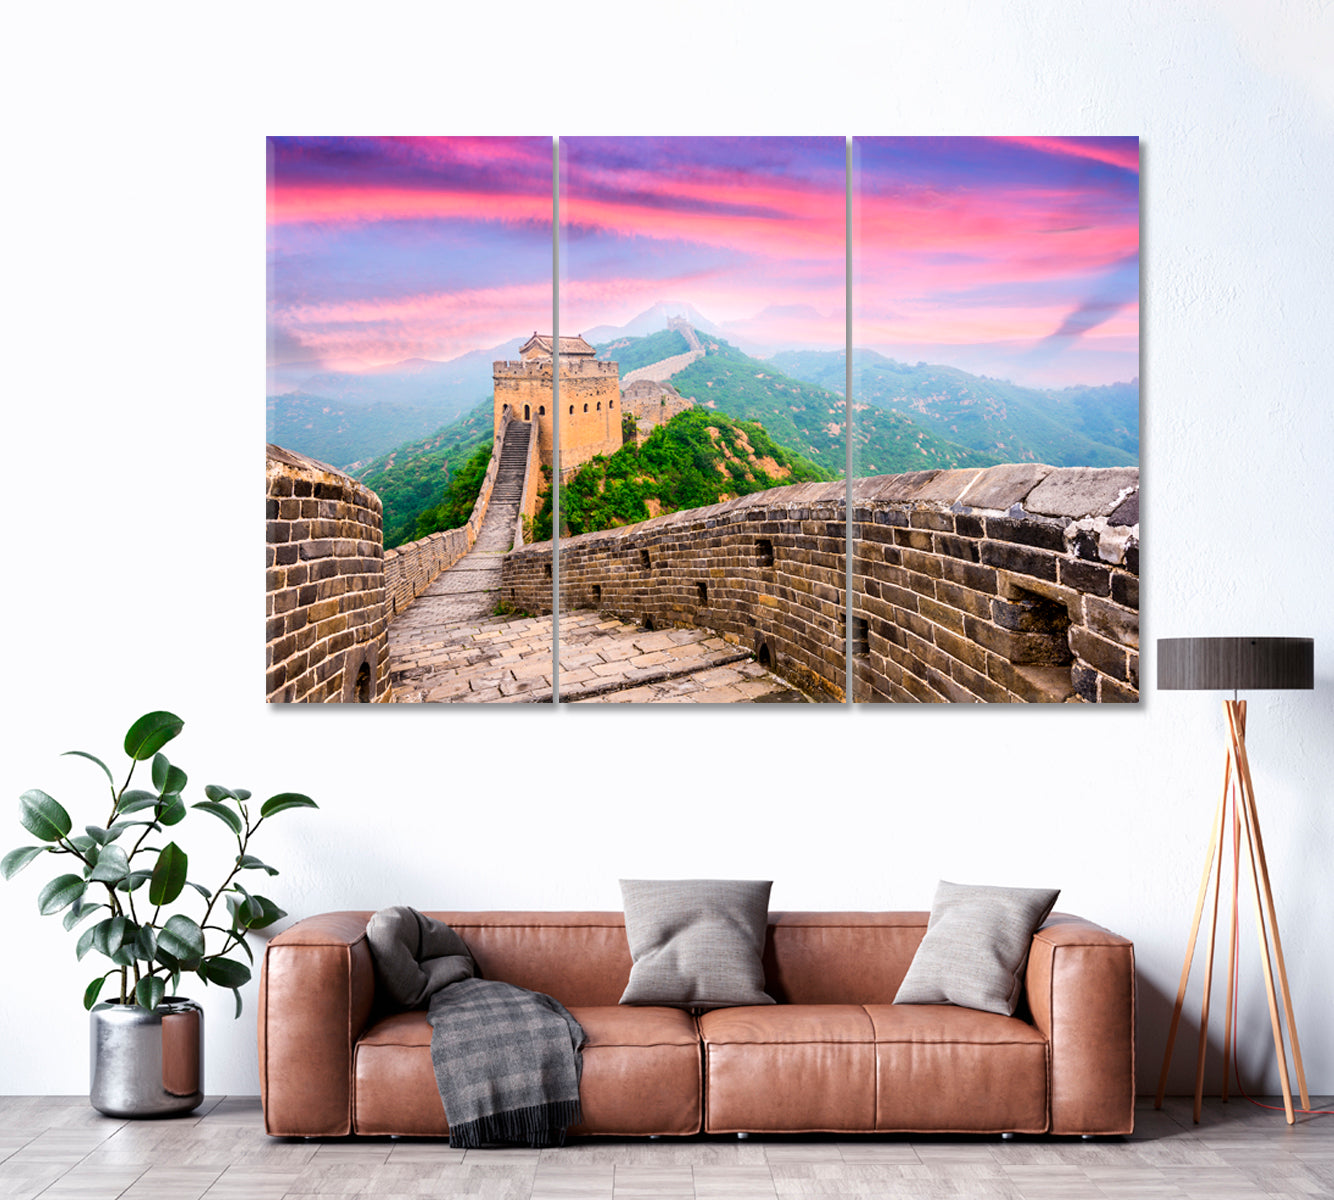 Great Wall of China Jinshanling Canvas Print ArtLexy 3 Panels 36"x24" inches 